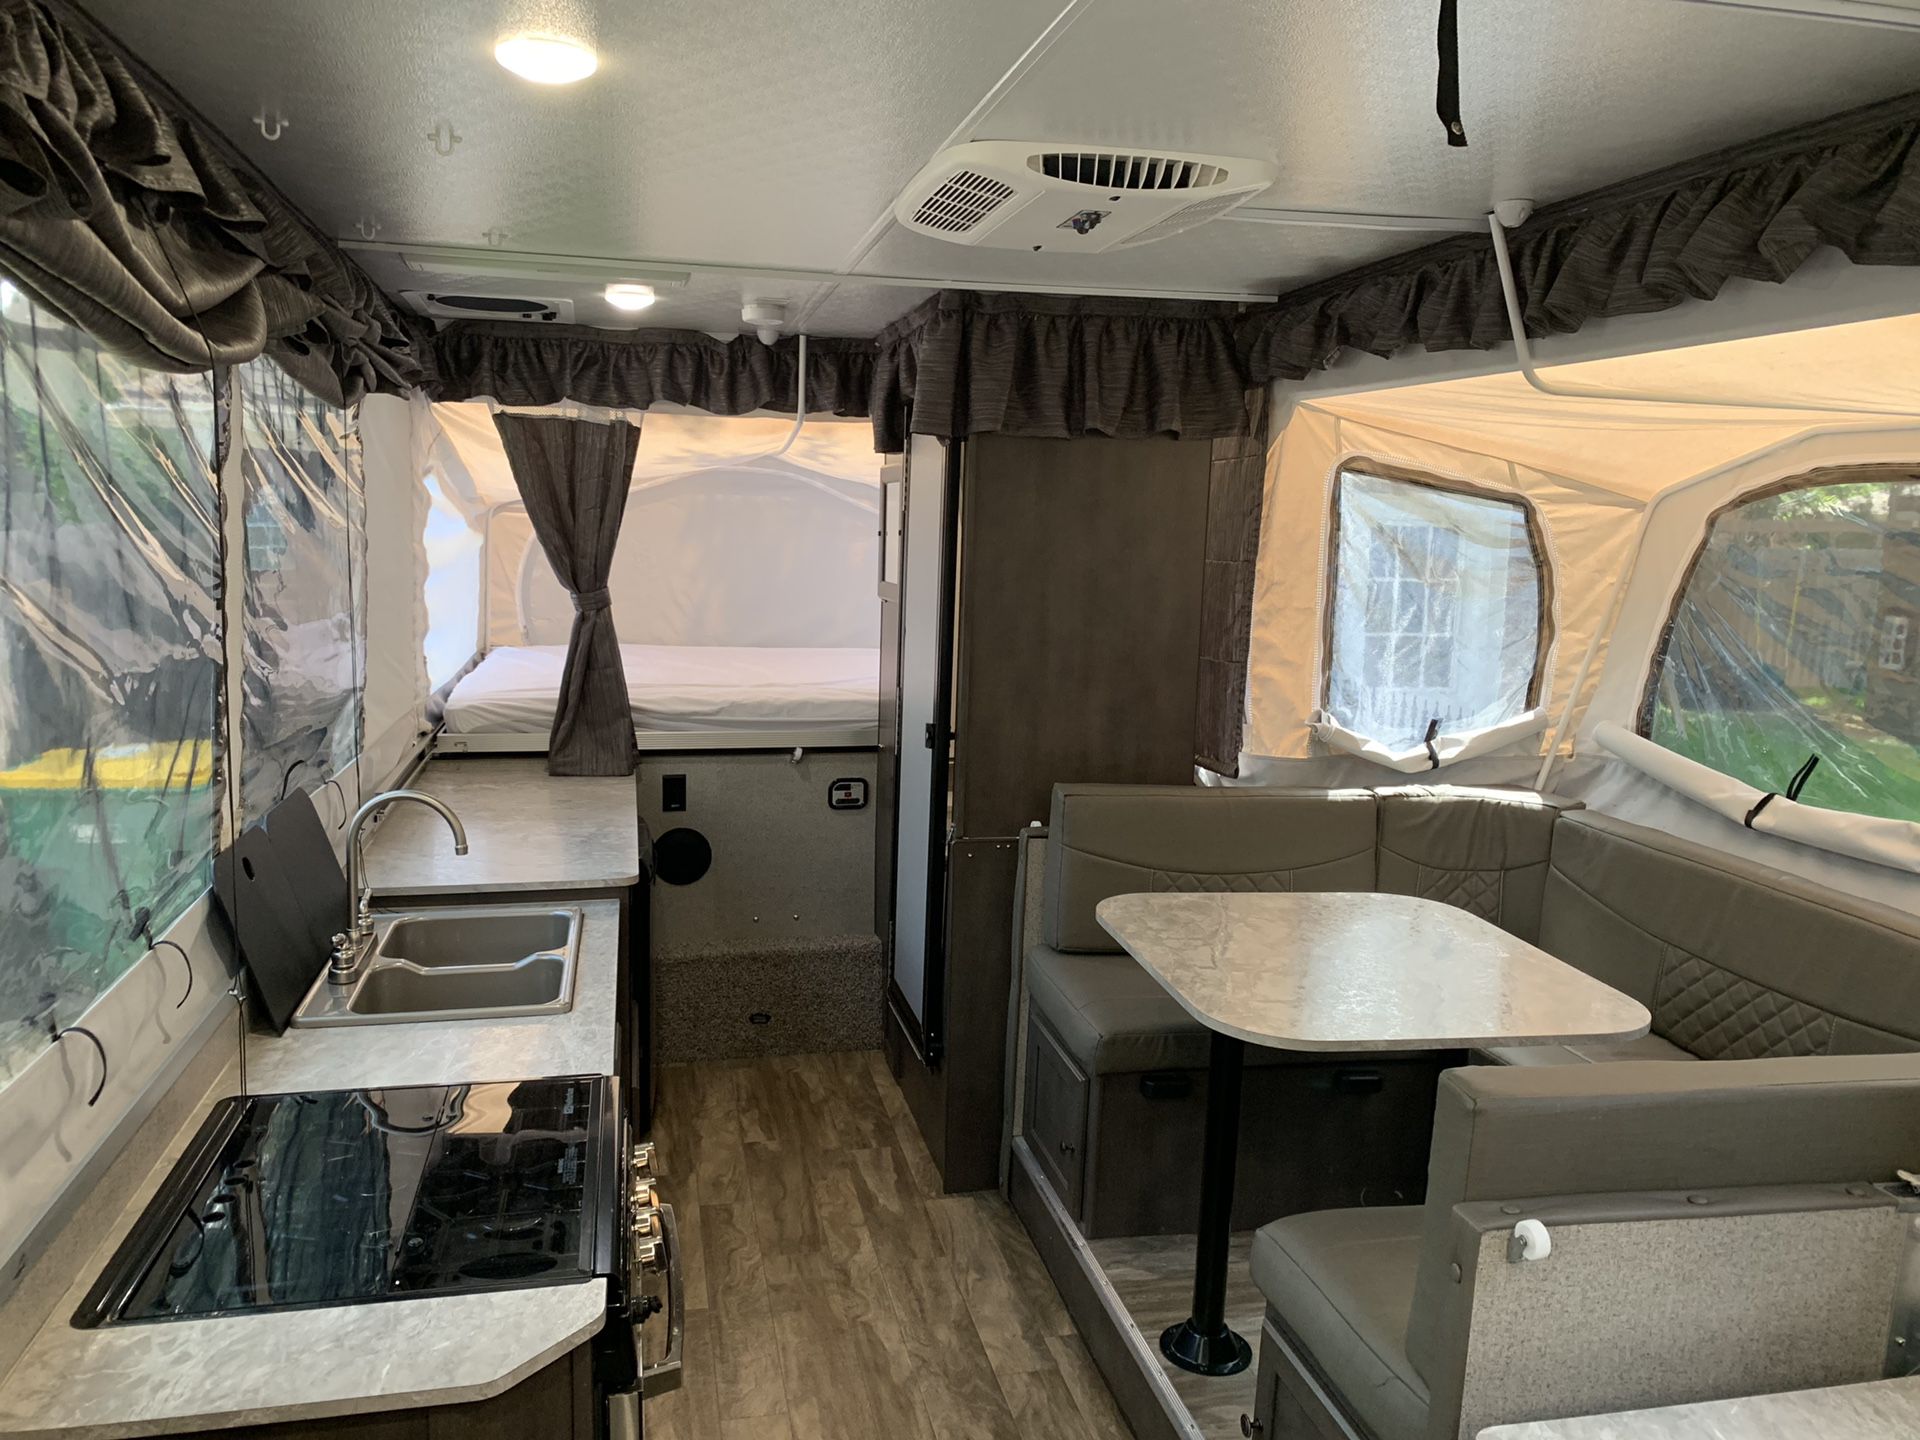 2019 Rockwood HW296 Pop up trailer camper for sale